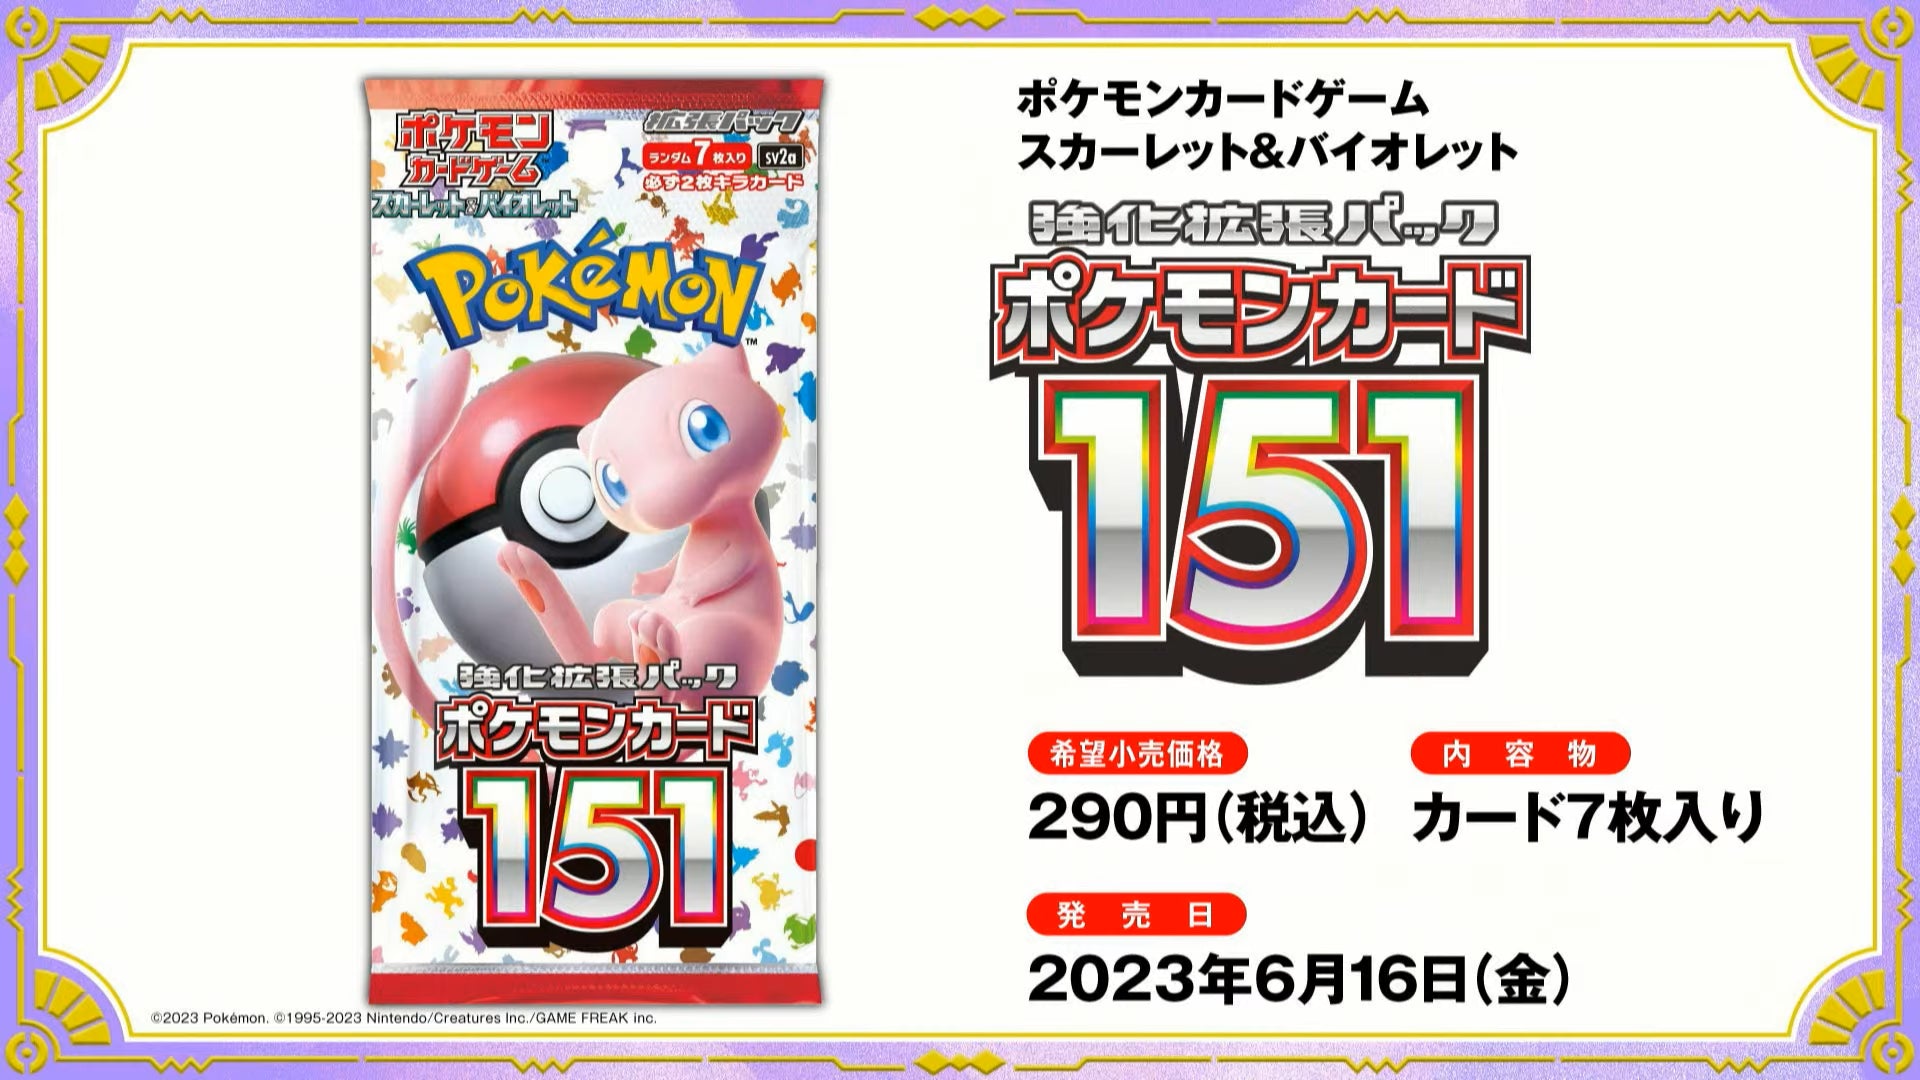 Japanese Pokémon - SV2a - Scarlet & Violet: Pokémon Card 151